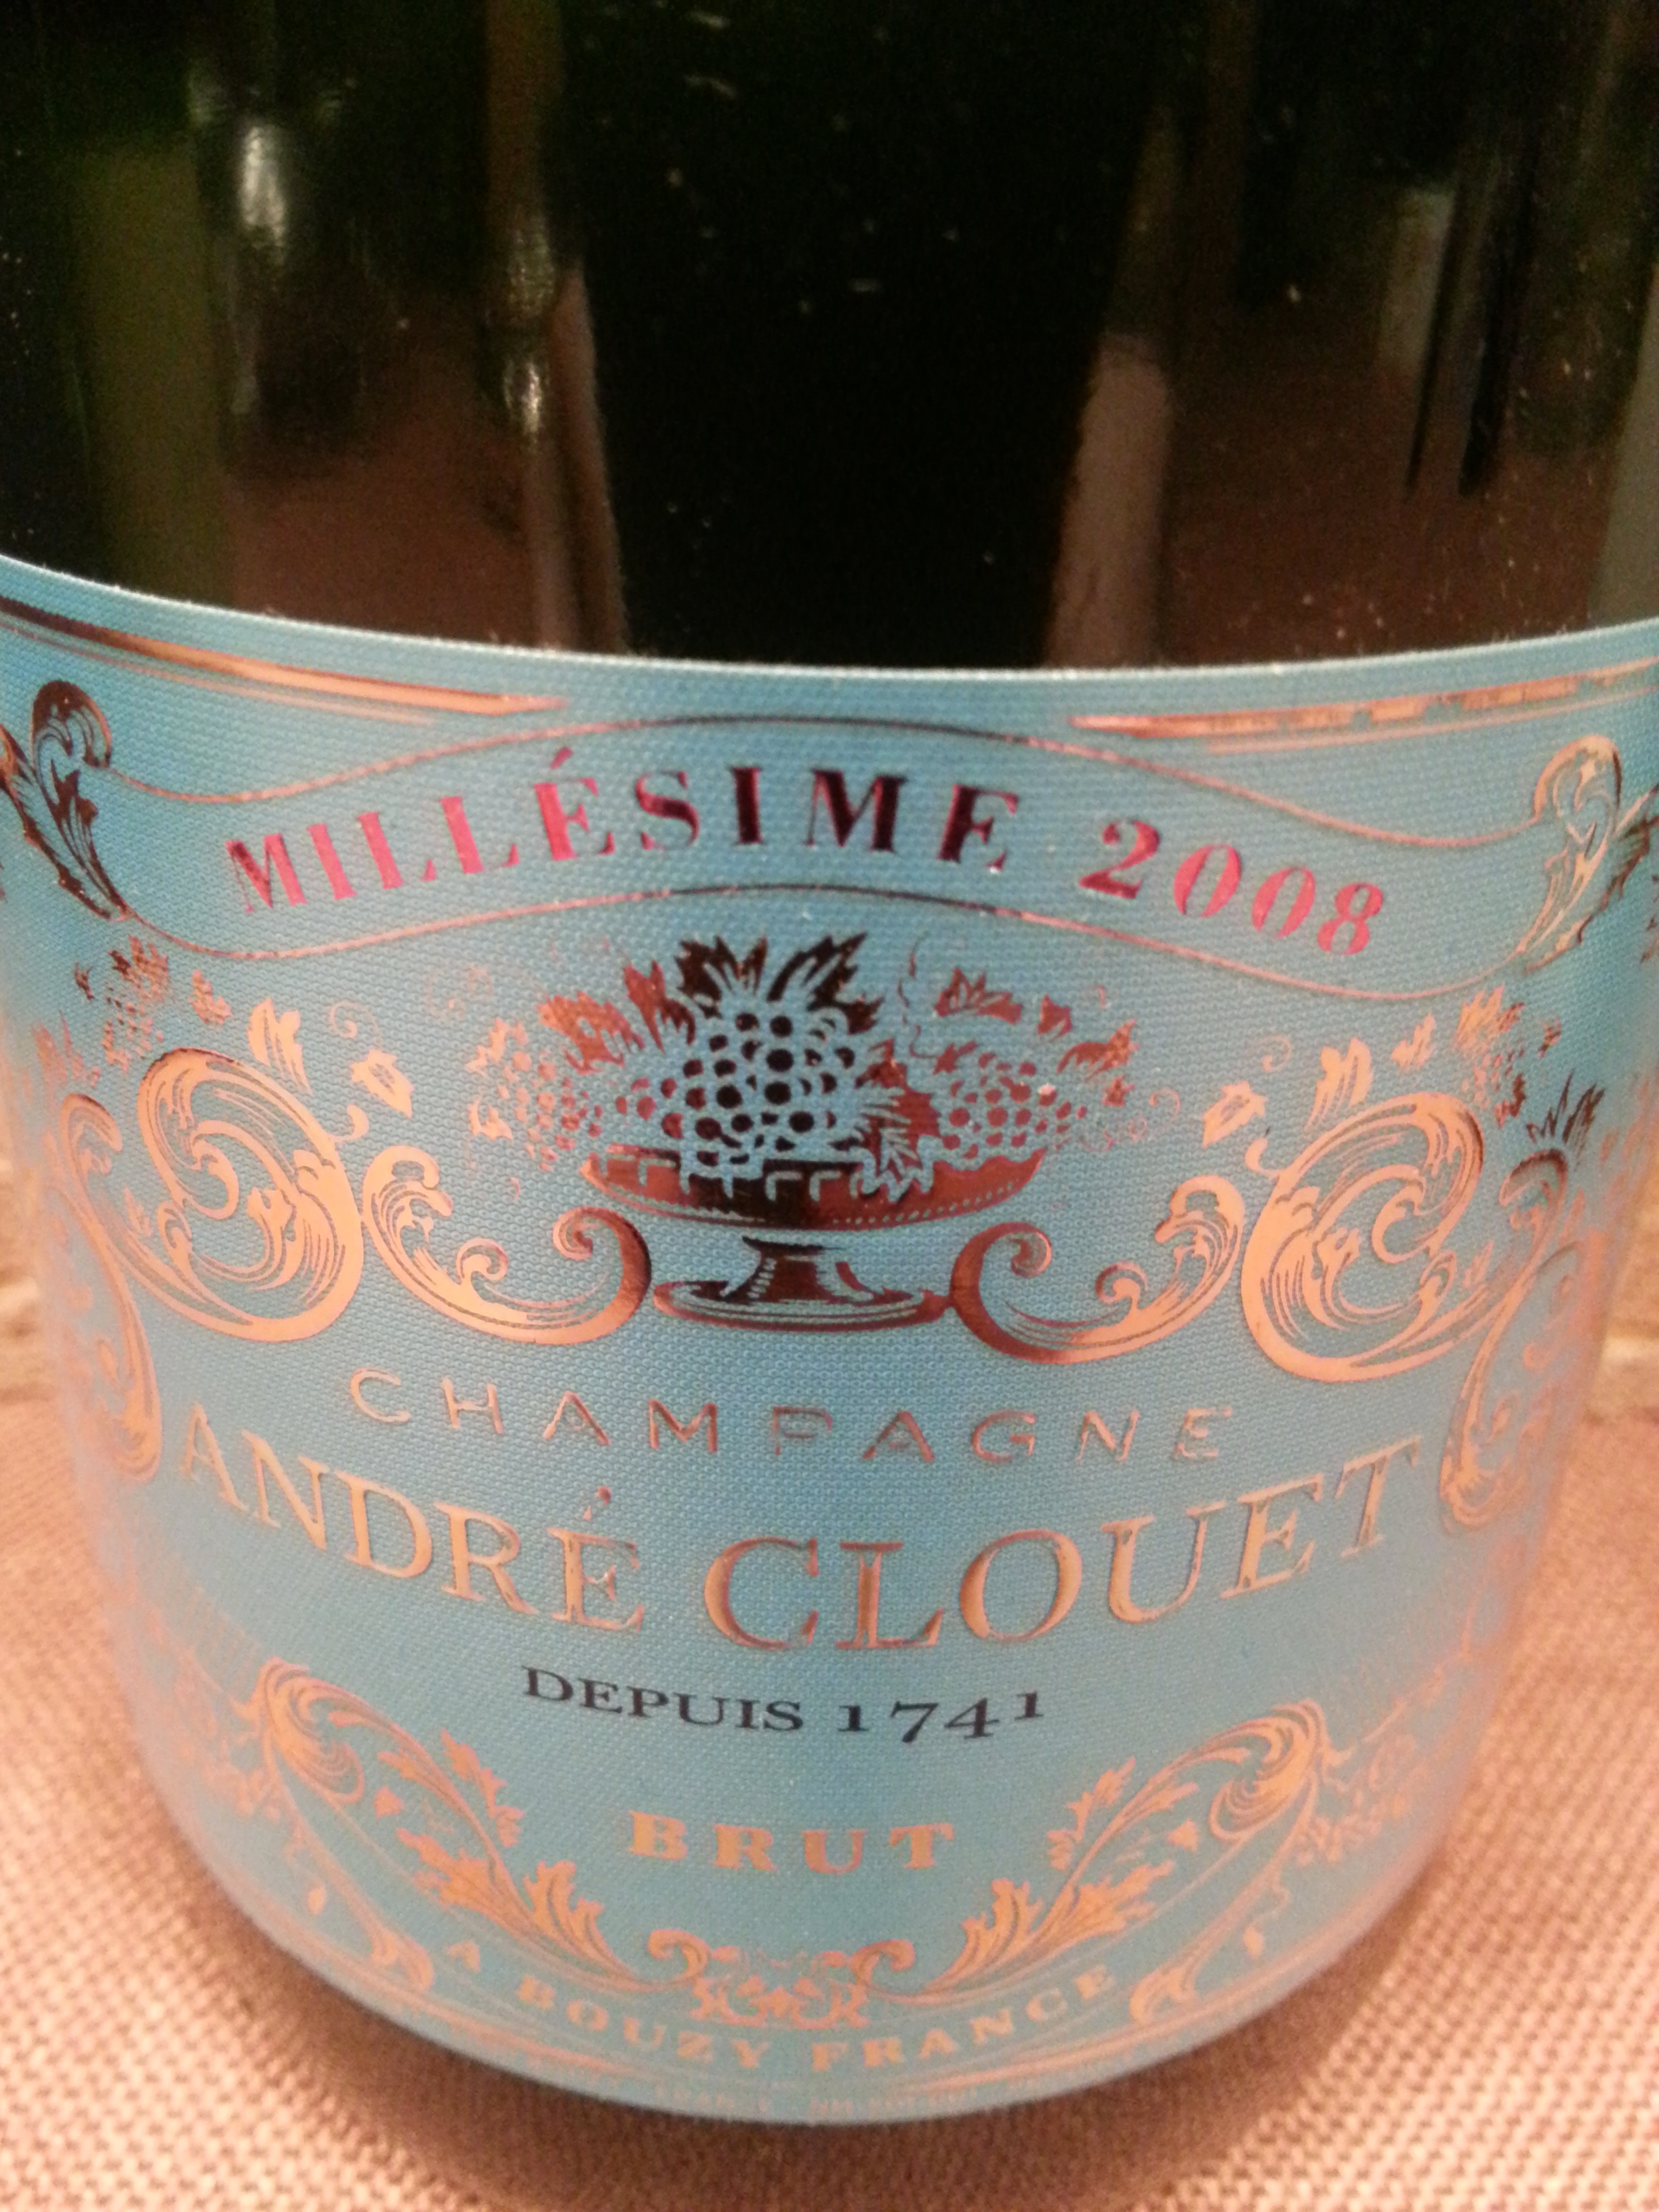 2008 Champagne Millésime | Clouet